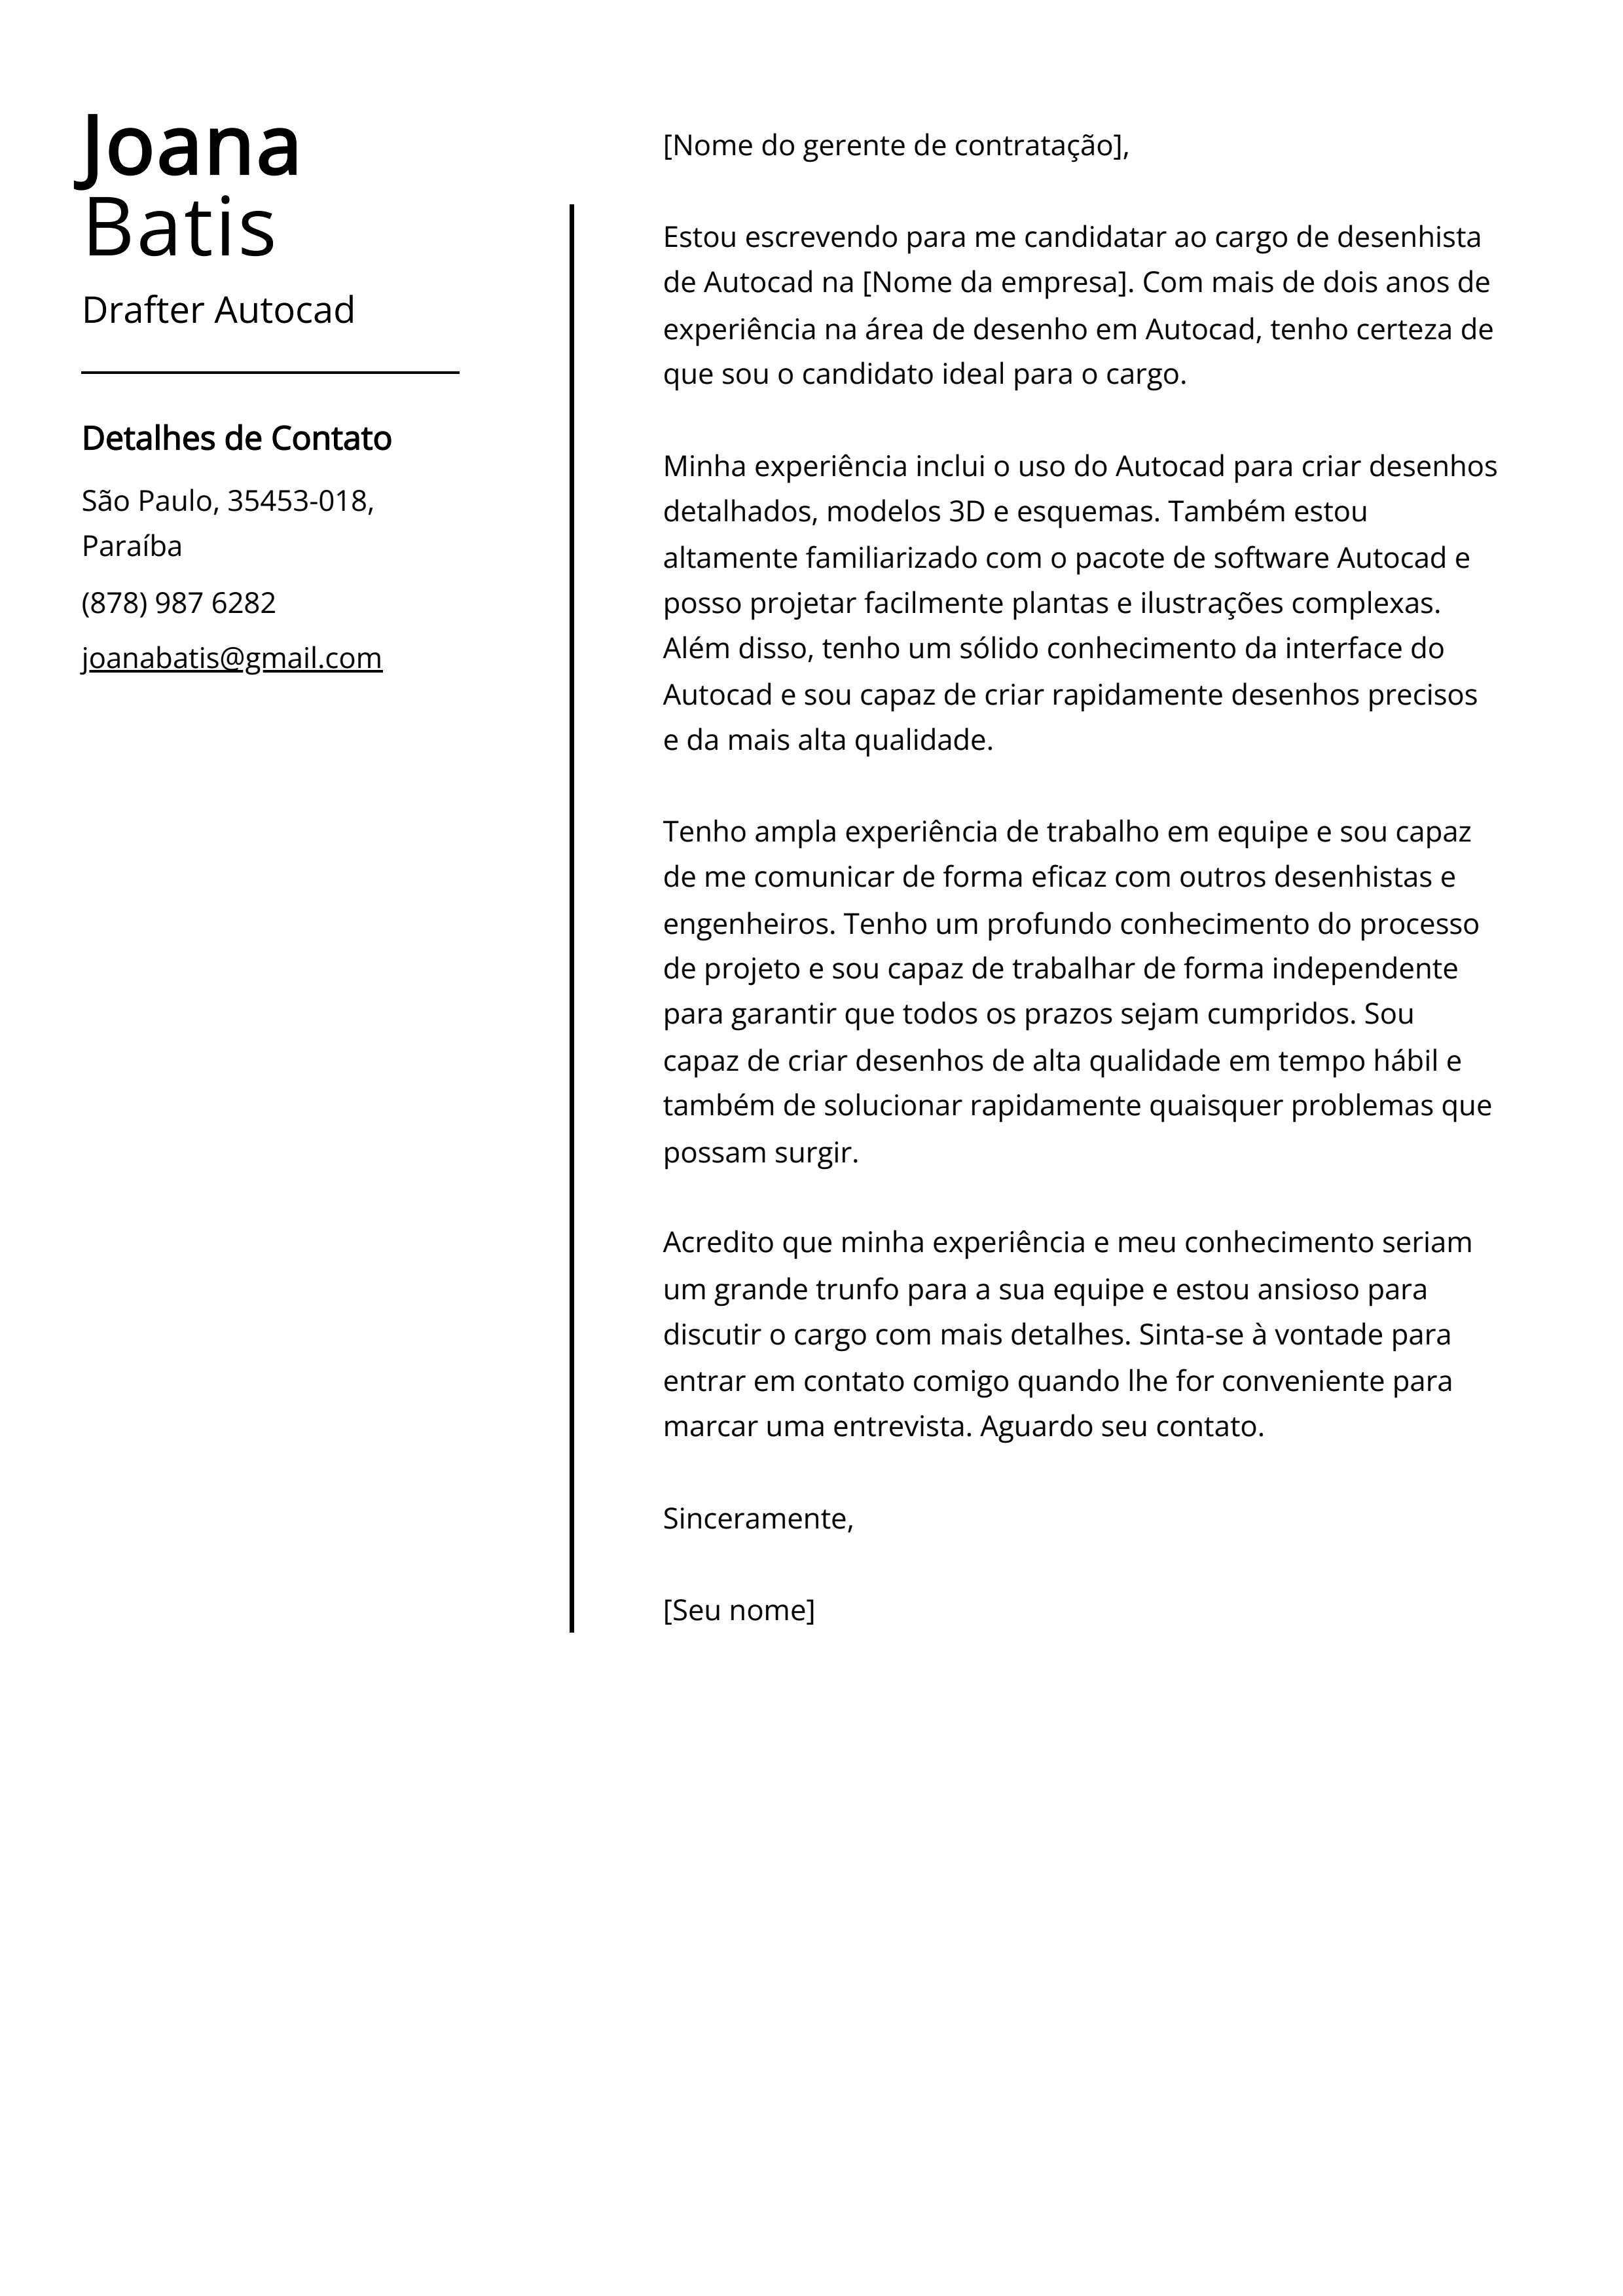 Exemplo de carta de apresentação para desenhista de Autocad